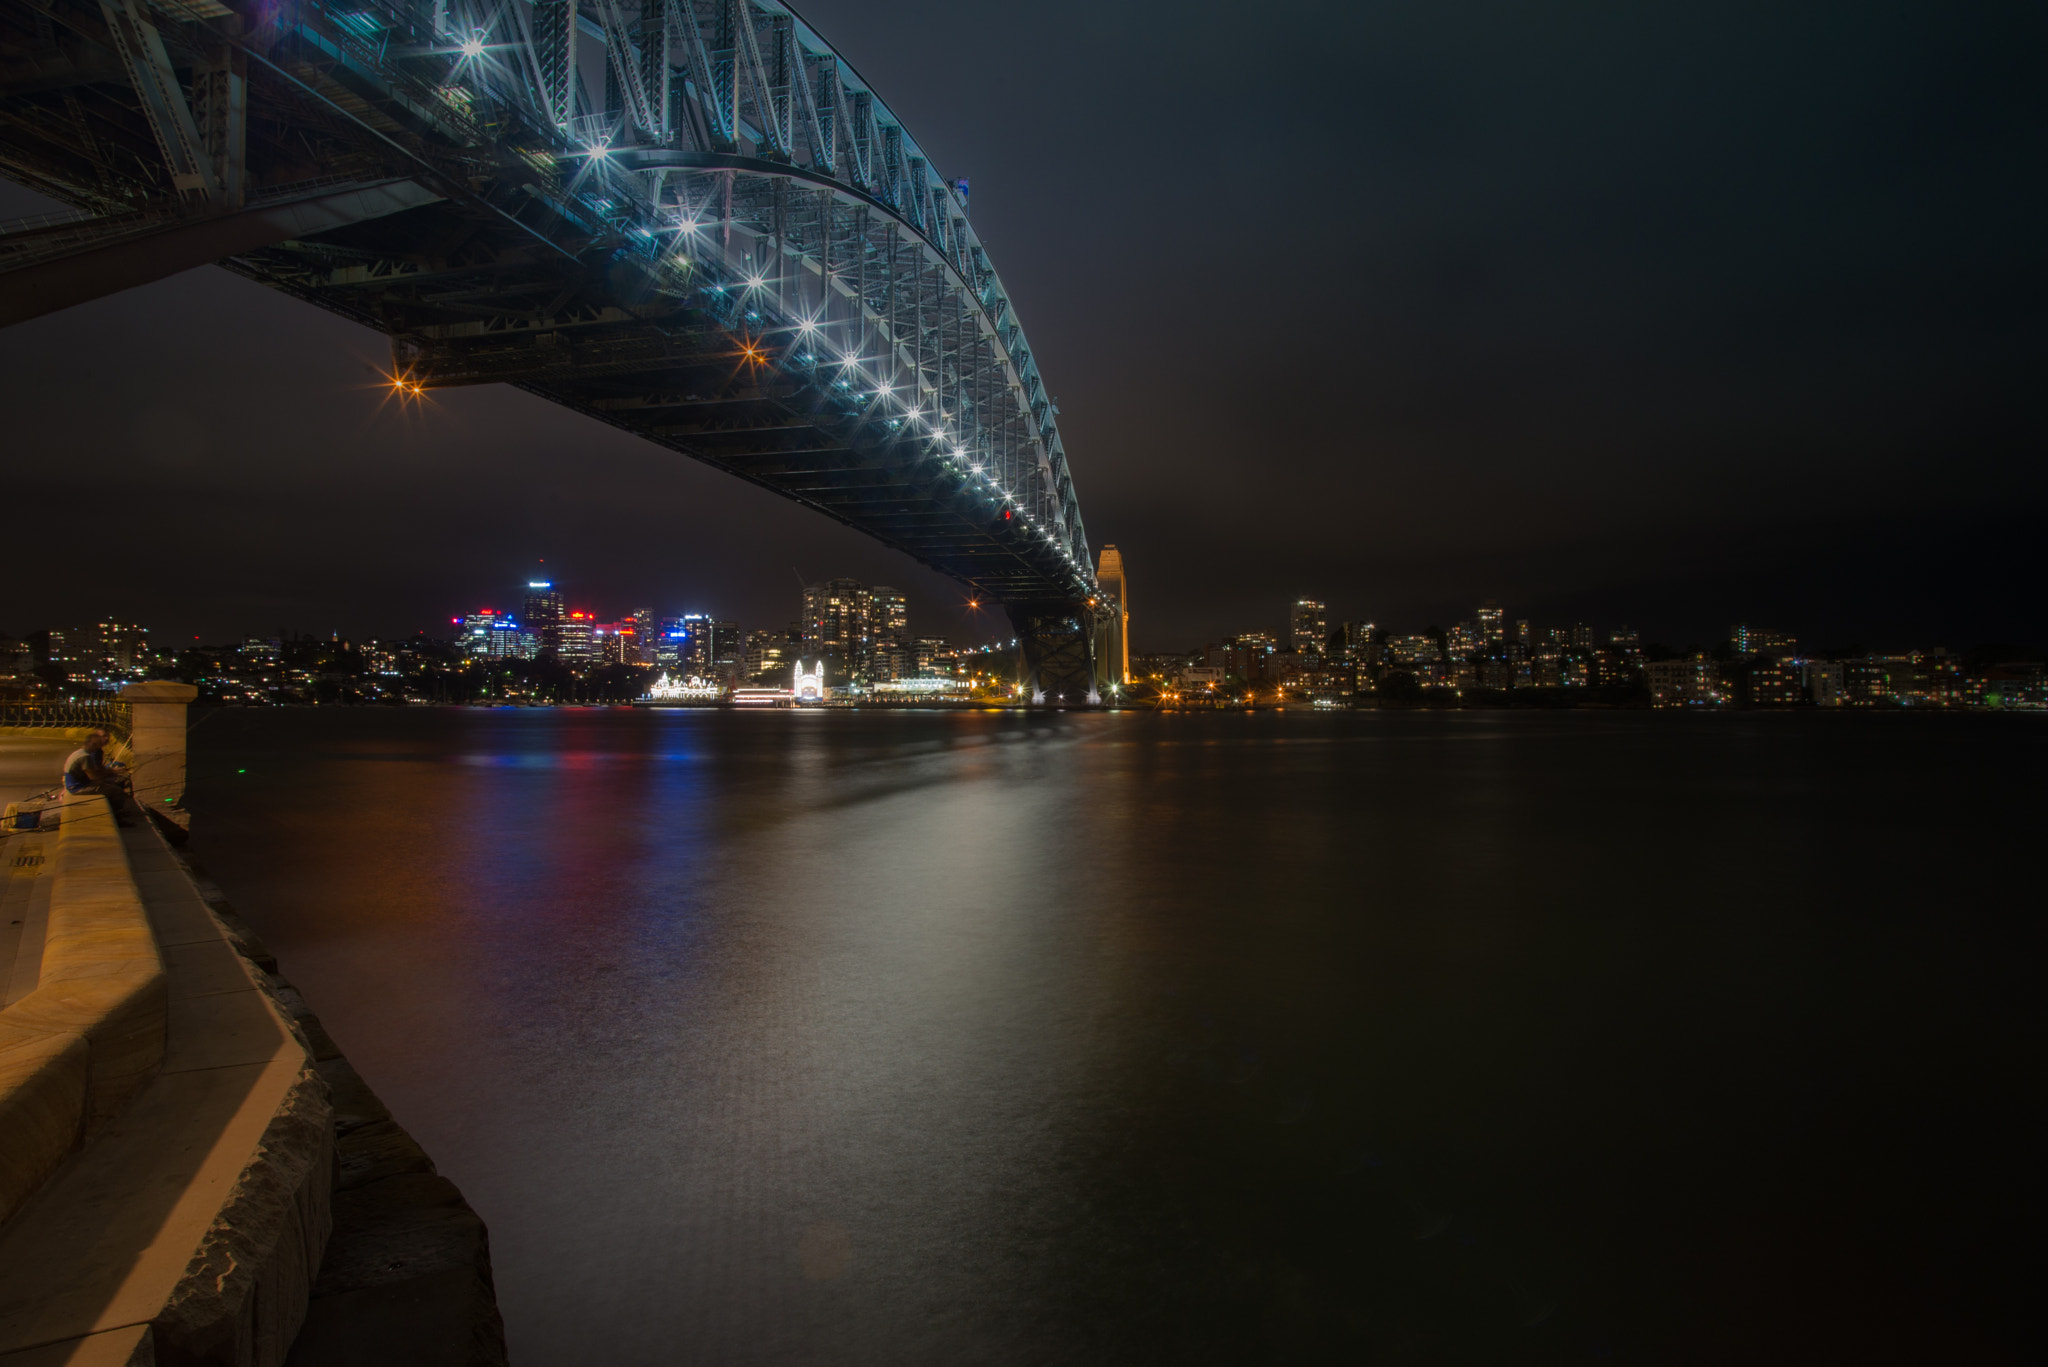 Nikon D610 + Sigma 17-35mm F2.8-4 EX DG  Aspherical HSM sample photo. Sydney harbour bridge photography